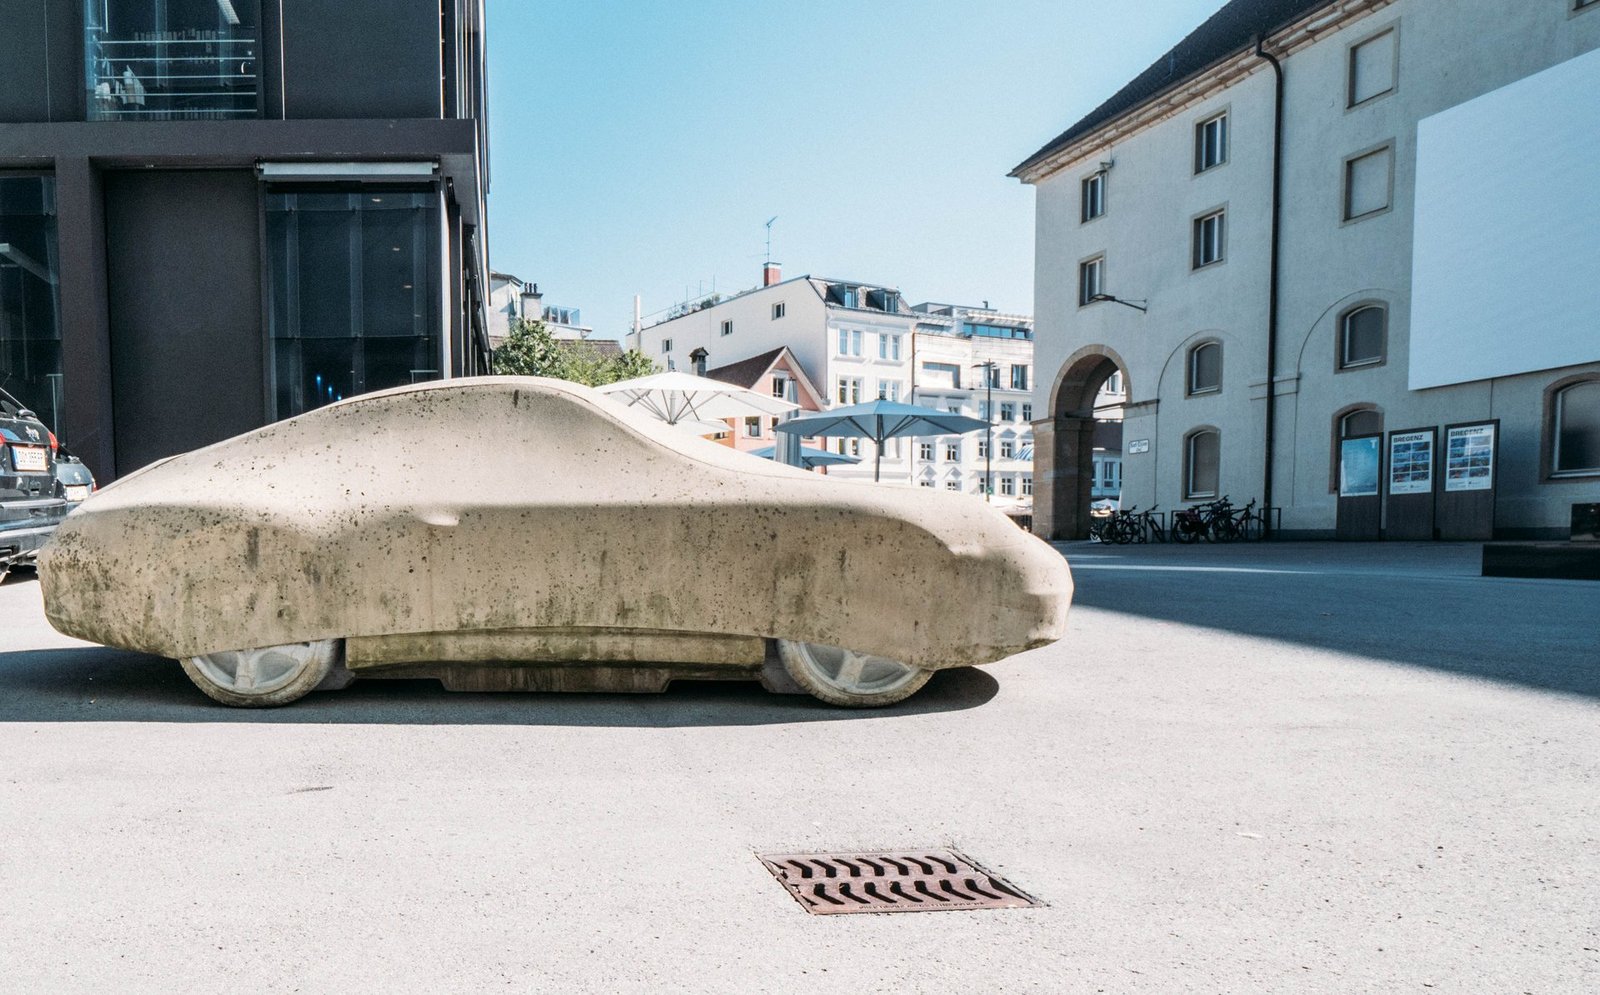 Skulptur in der Innenstadt von einem Porsche aus Stein